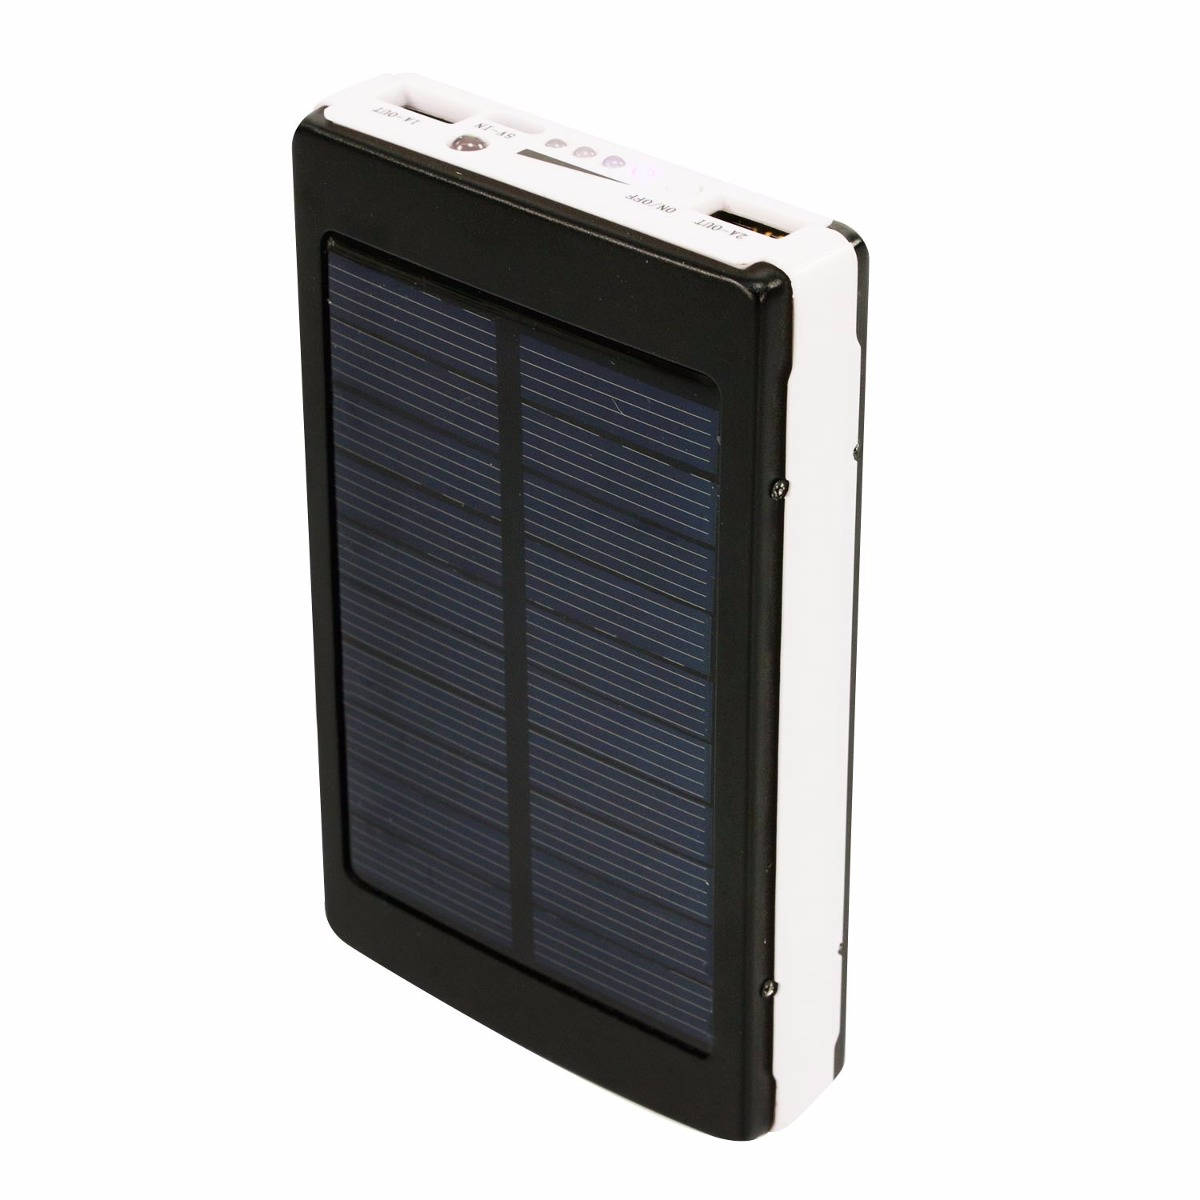 Bateria Cargador Solar Para Celular Iphone Samsung Psp 6000m